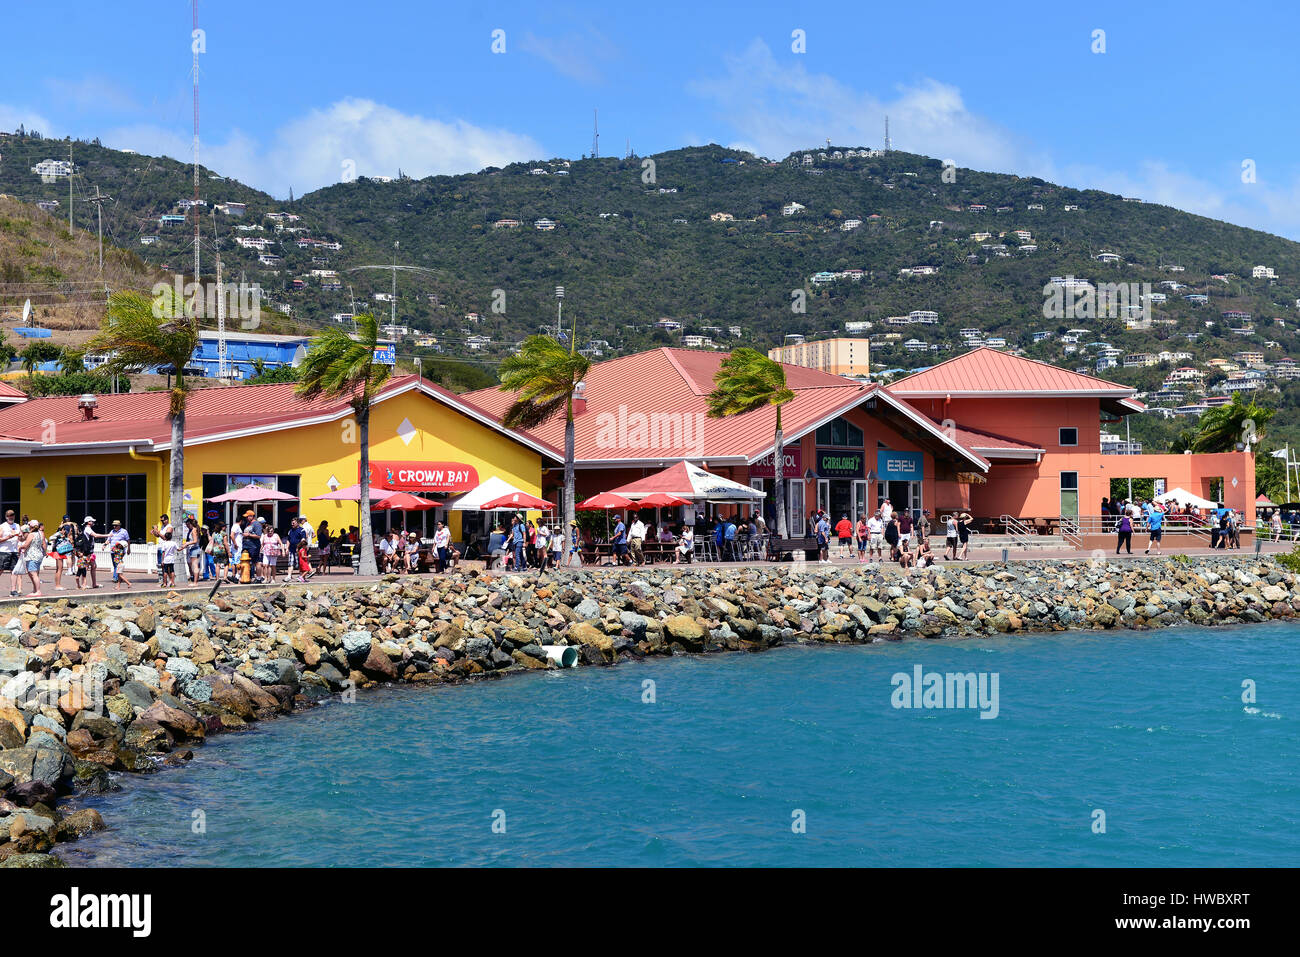 Saint Thomas, Islas Vírgenes de EE.UU. - March 1, 2017: El Centro de Crown Bay ofrece compras, juegos, comida, bebidas y está ubicado en las cercanías de muelle de cruceros Foto de stock